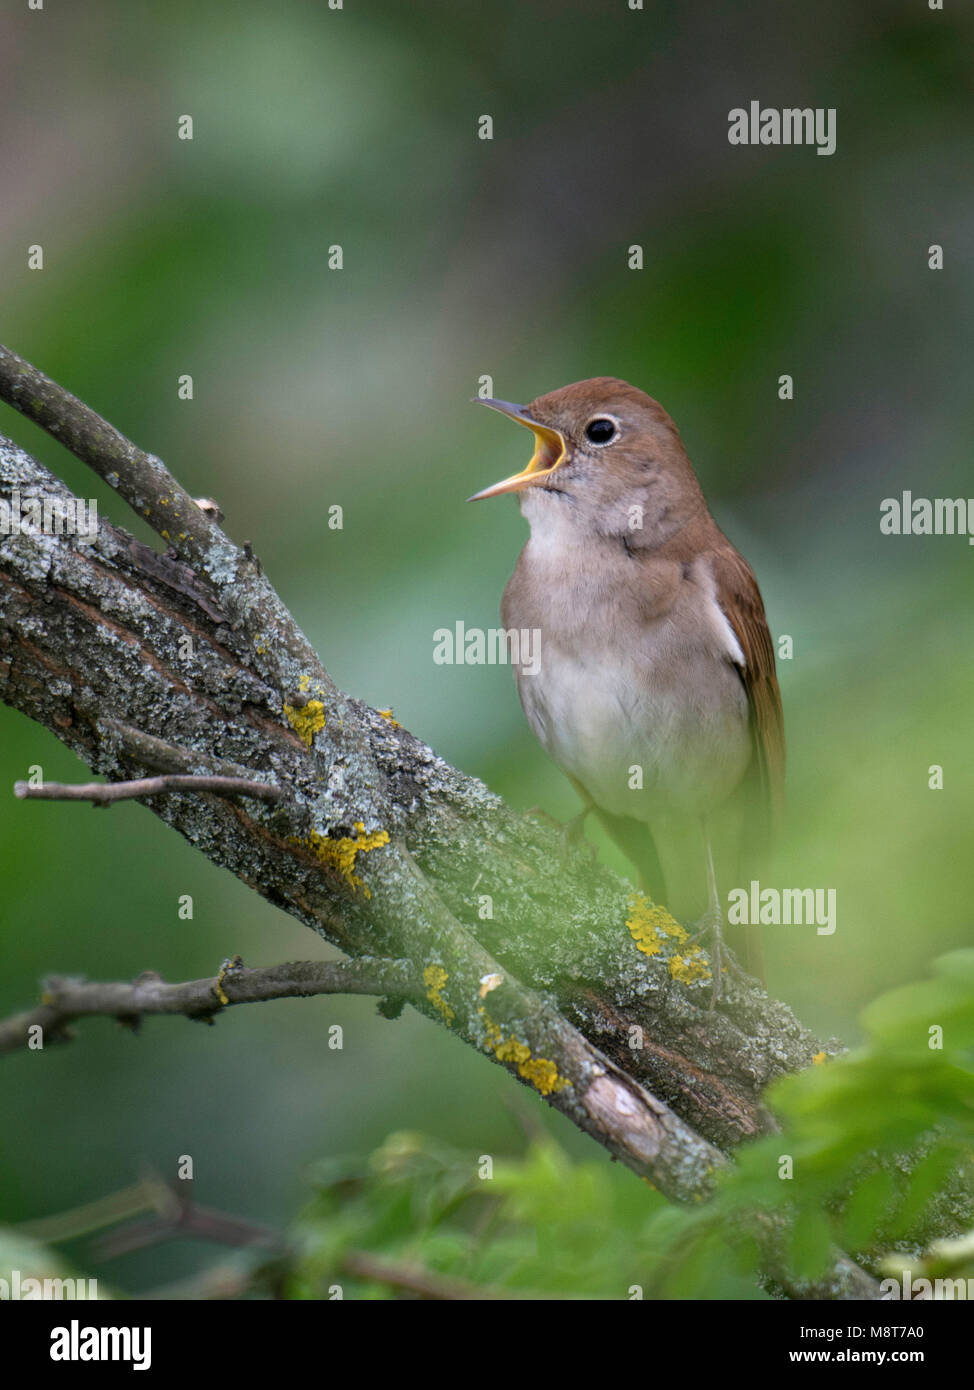 Zingende nachtegaal; singing Common Nightingale Stock Photo